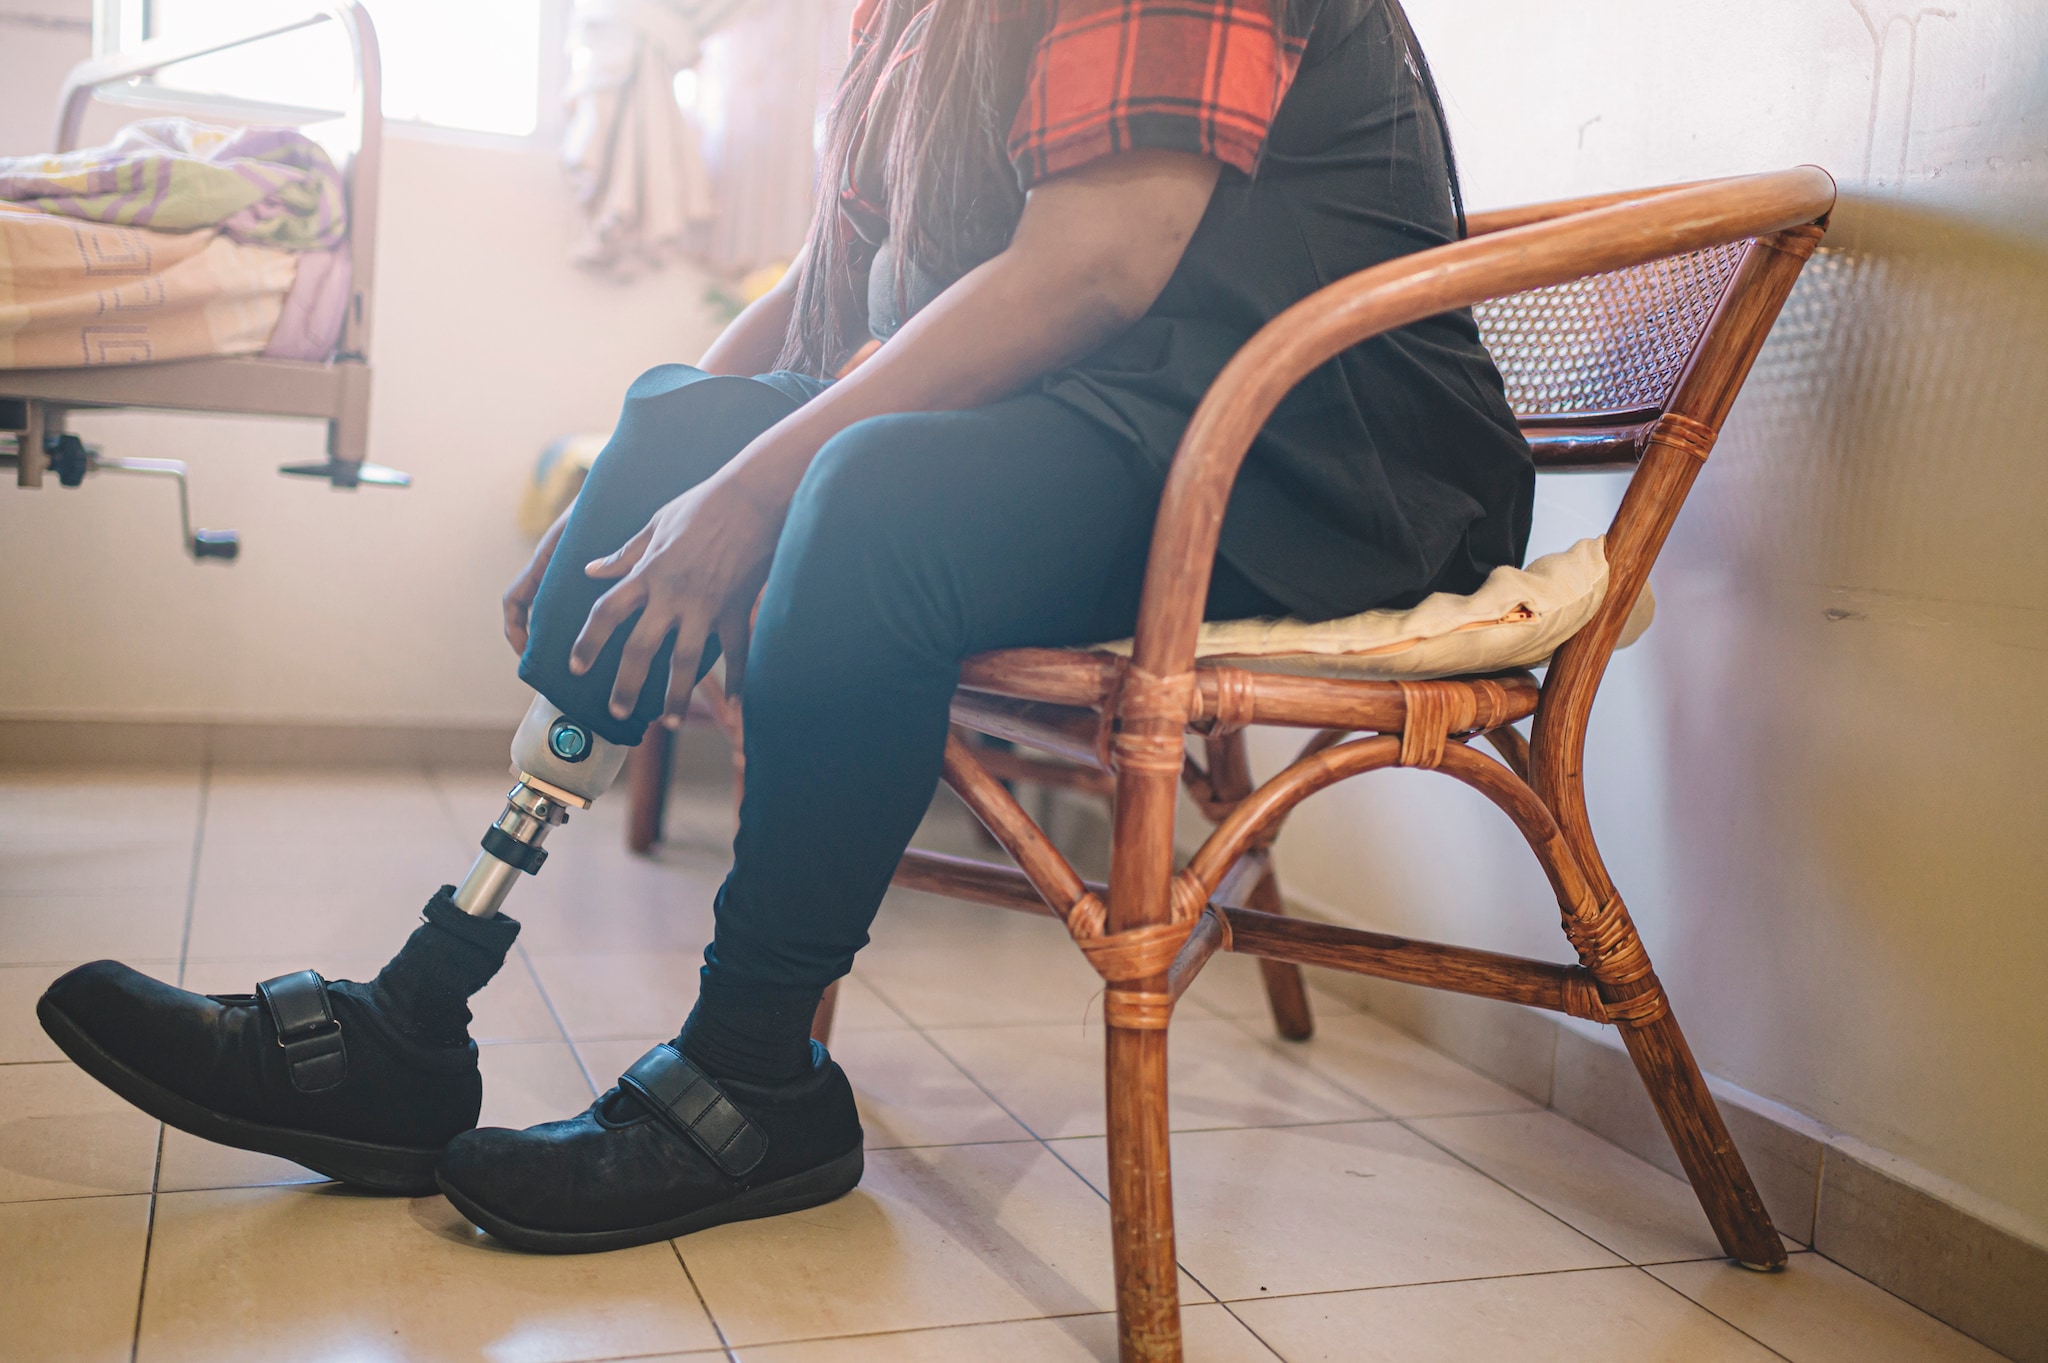 Persona con una pierna prostética ajustando la extremidad artificial.